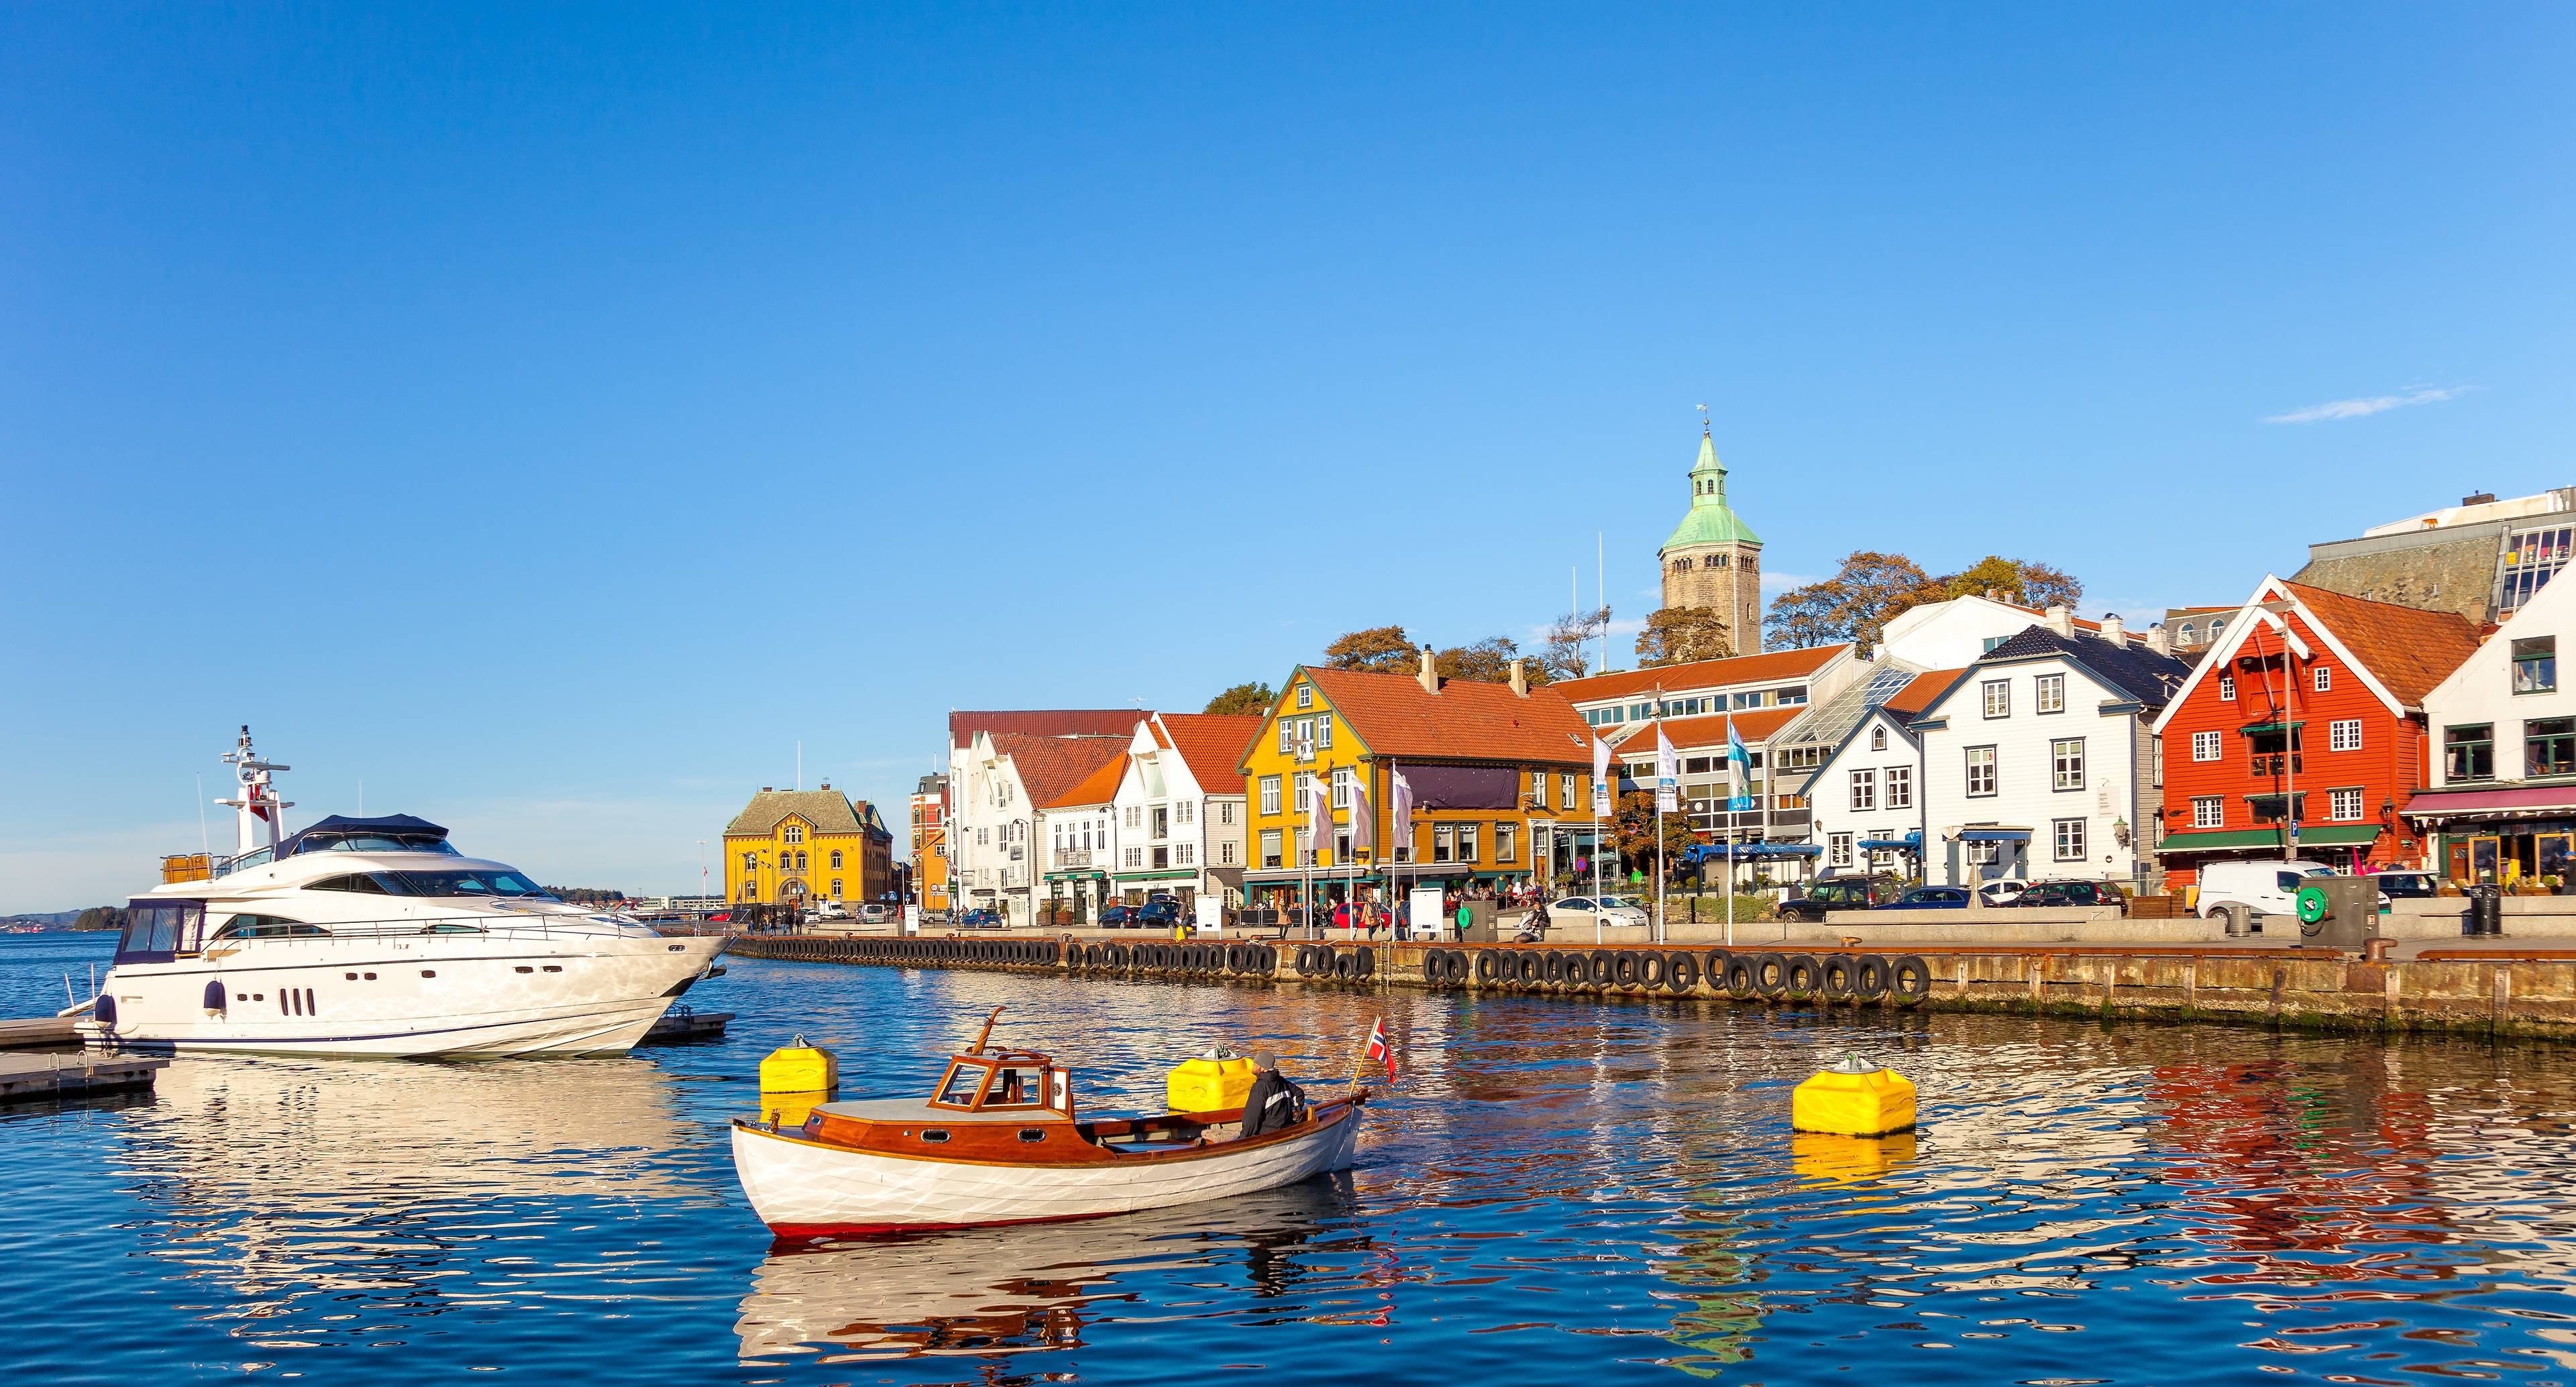 Un viaggio a ritroso nella storia nella capitale norvegese del petrolio, Stavanger